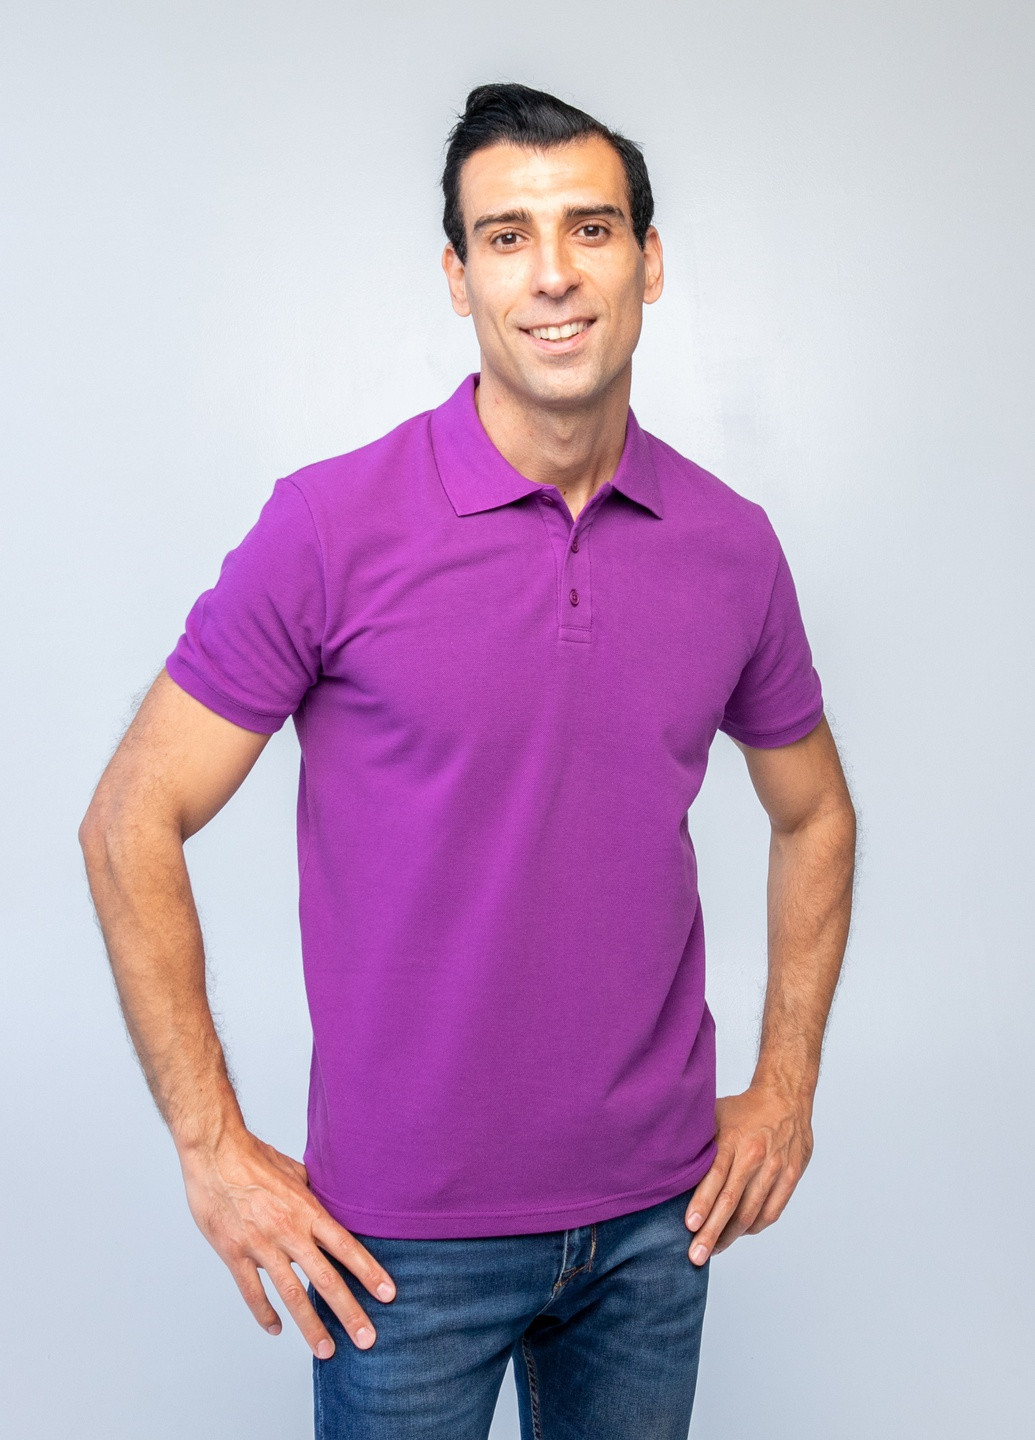 Фиолетовая футболка-футболка поло чоловіча для мужчин TvoePolo однотонная